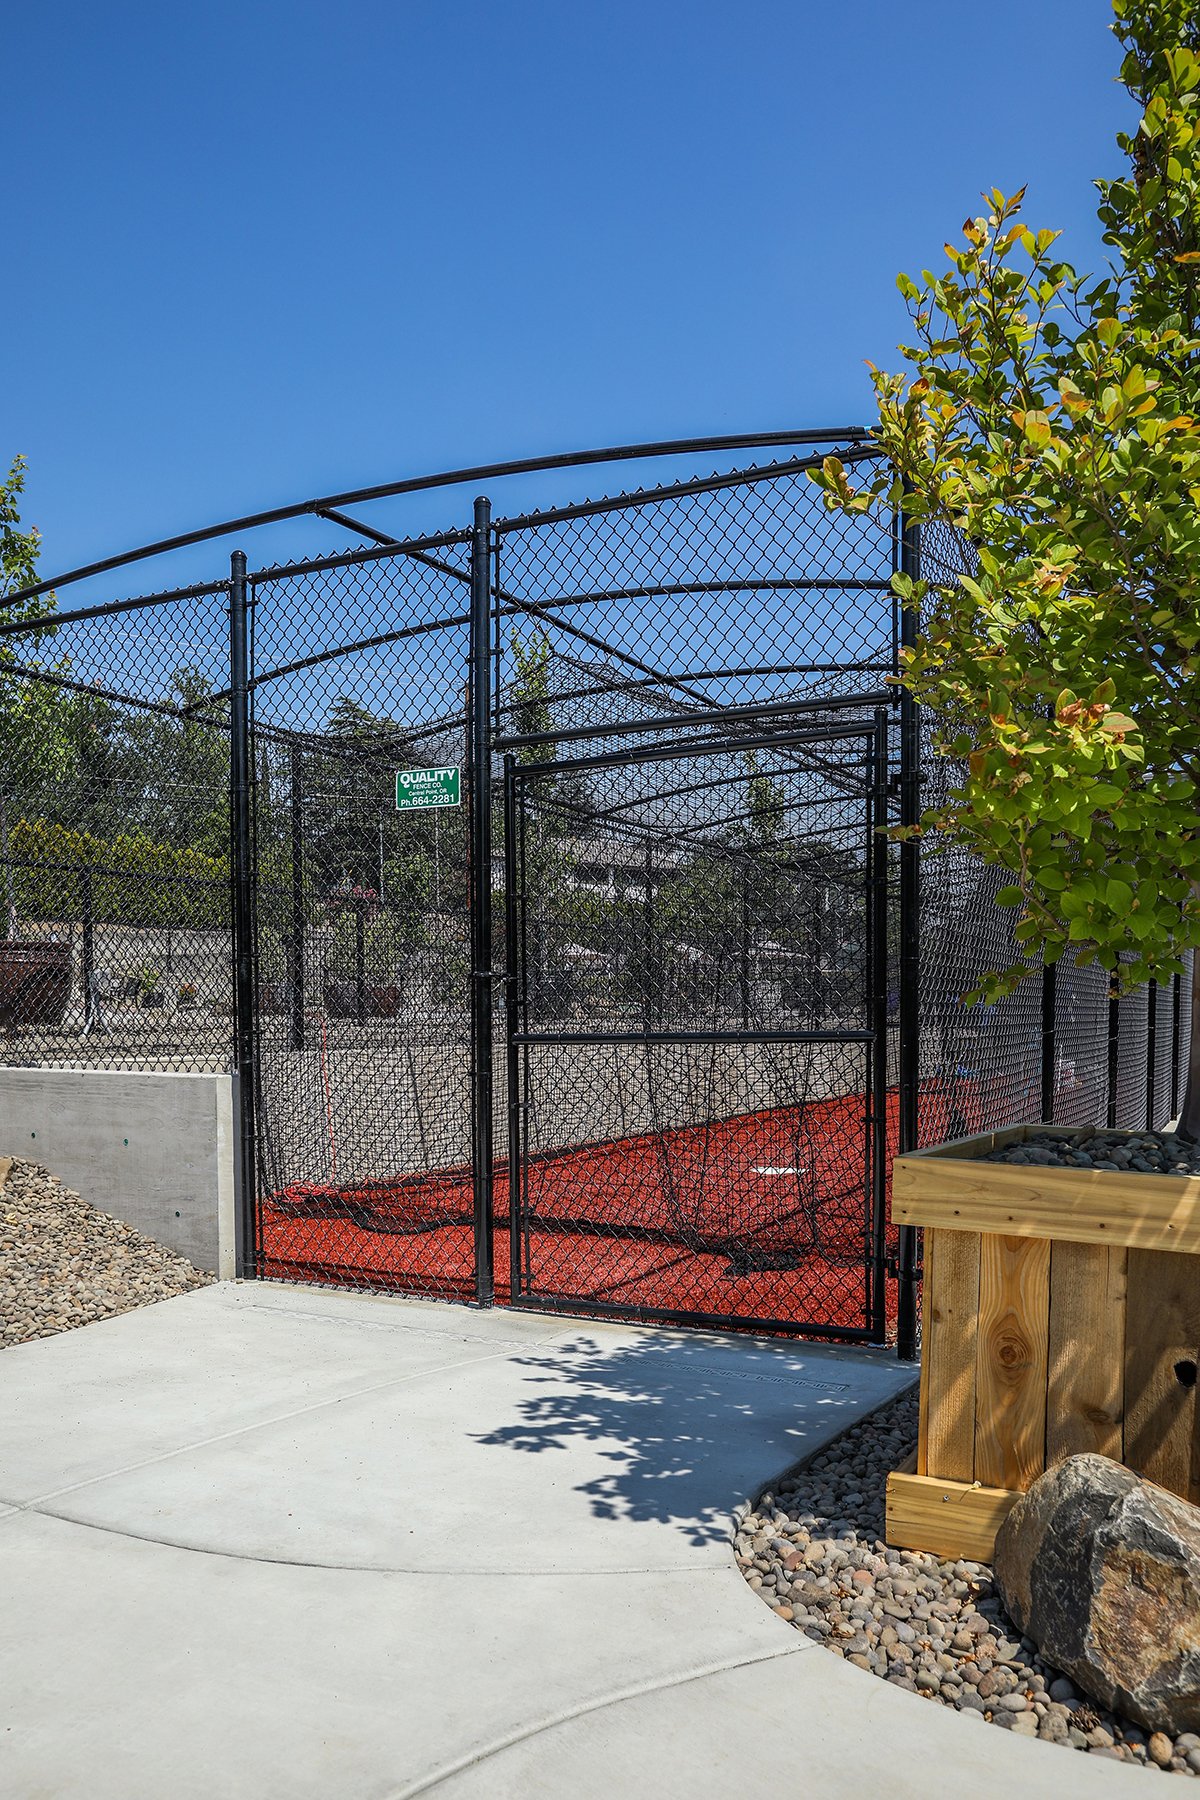 batting cage